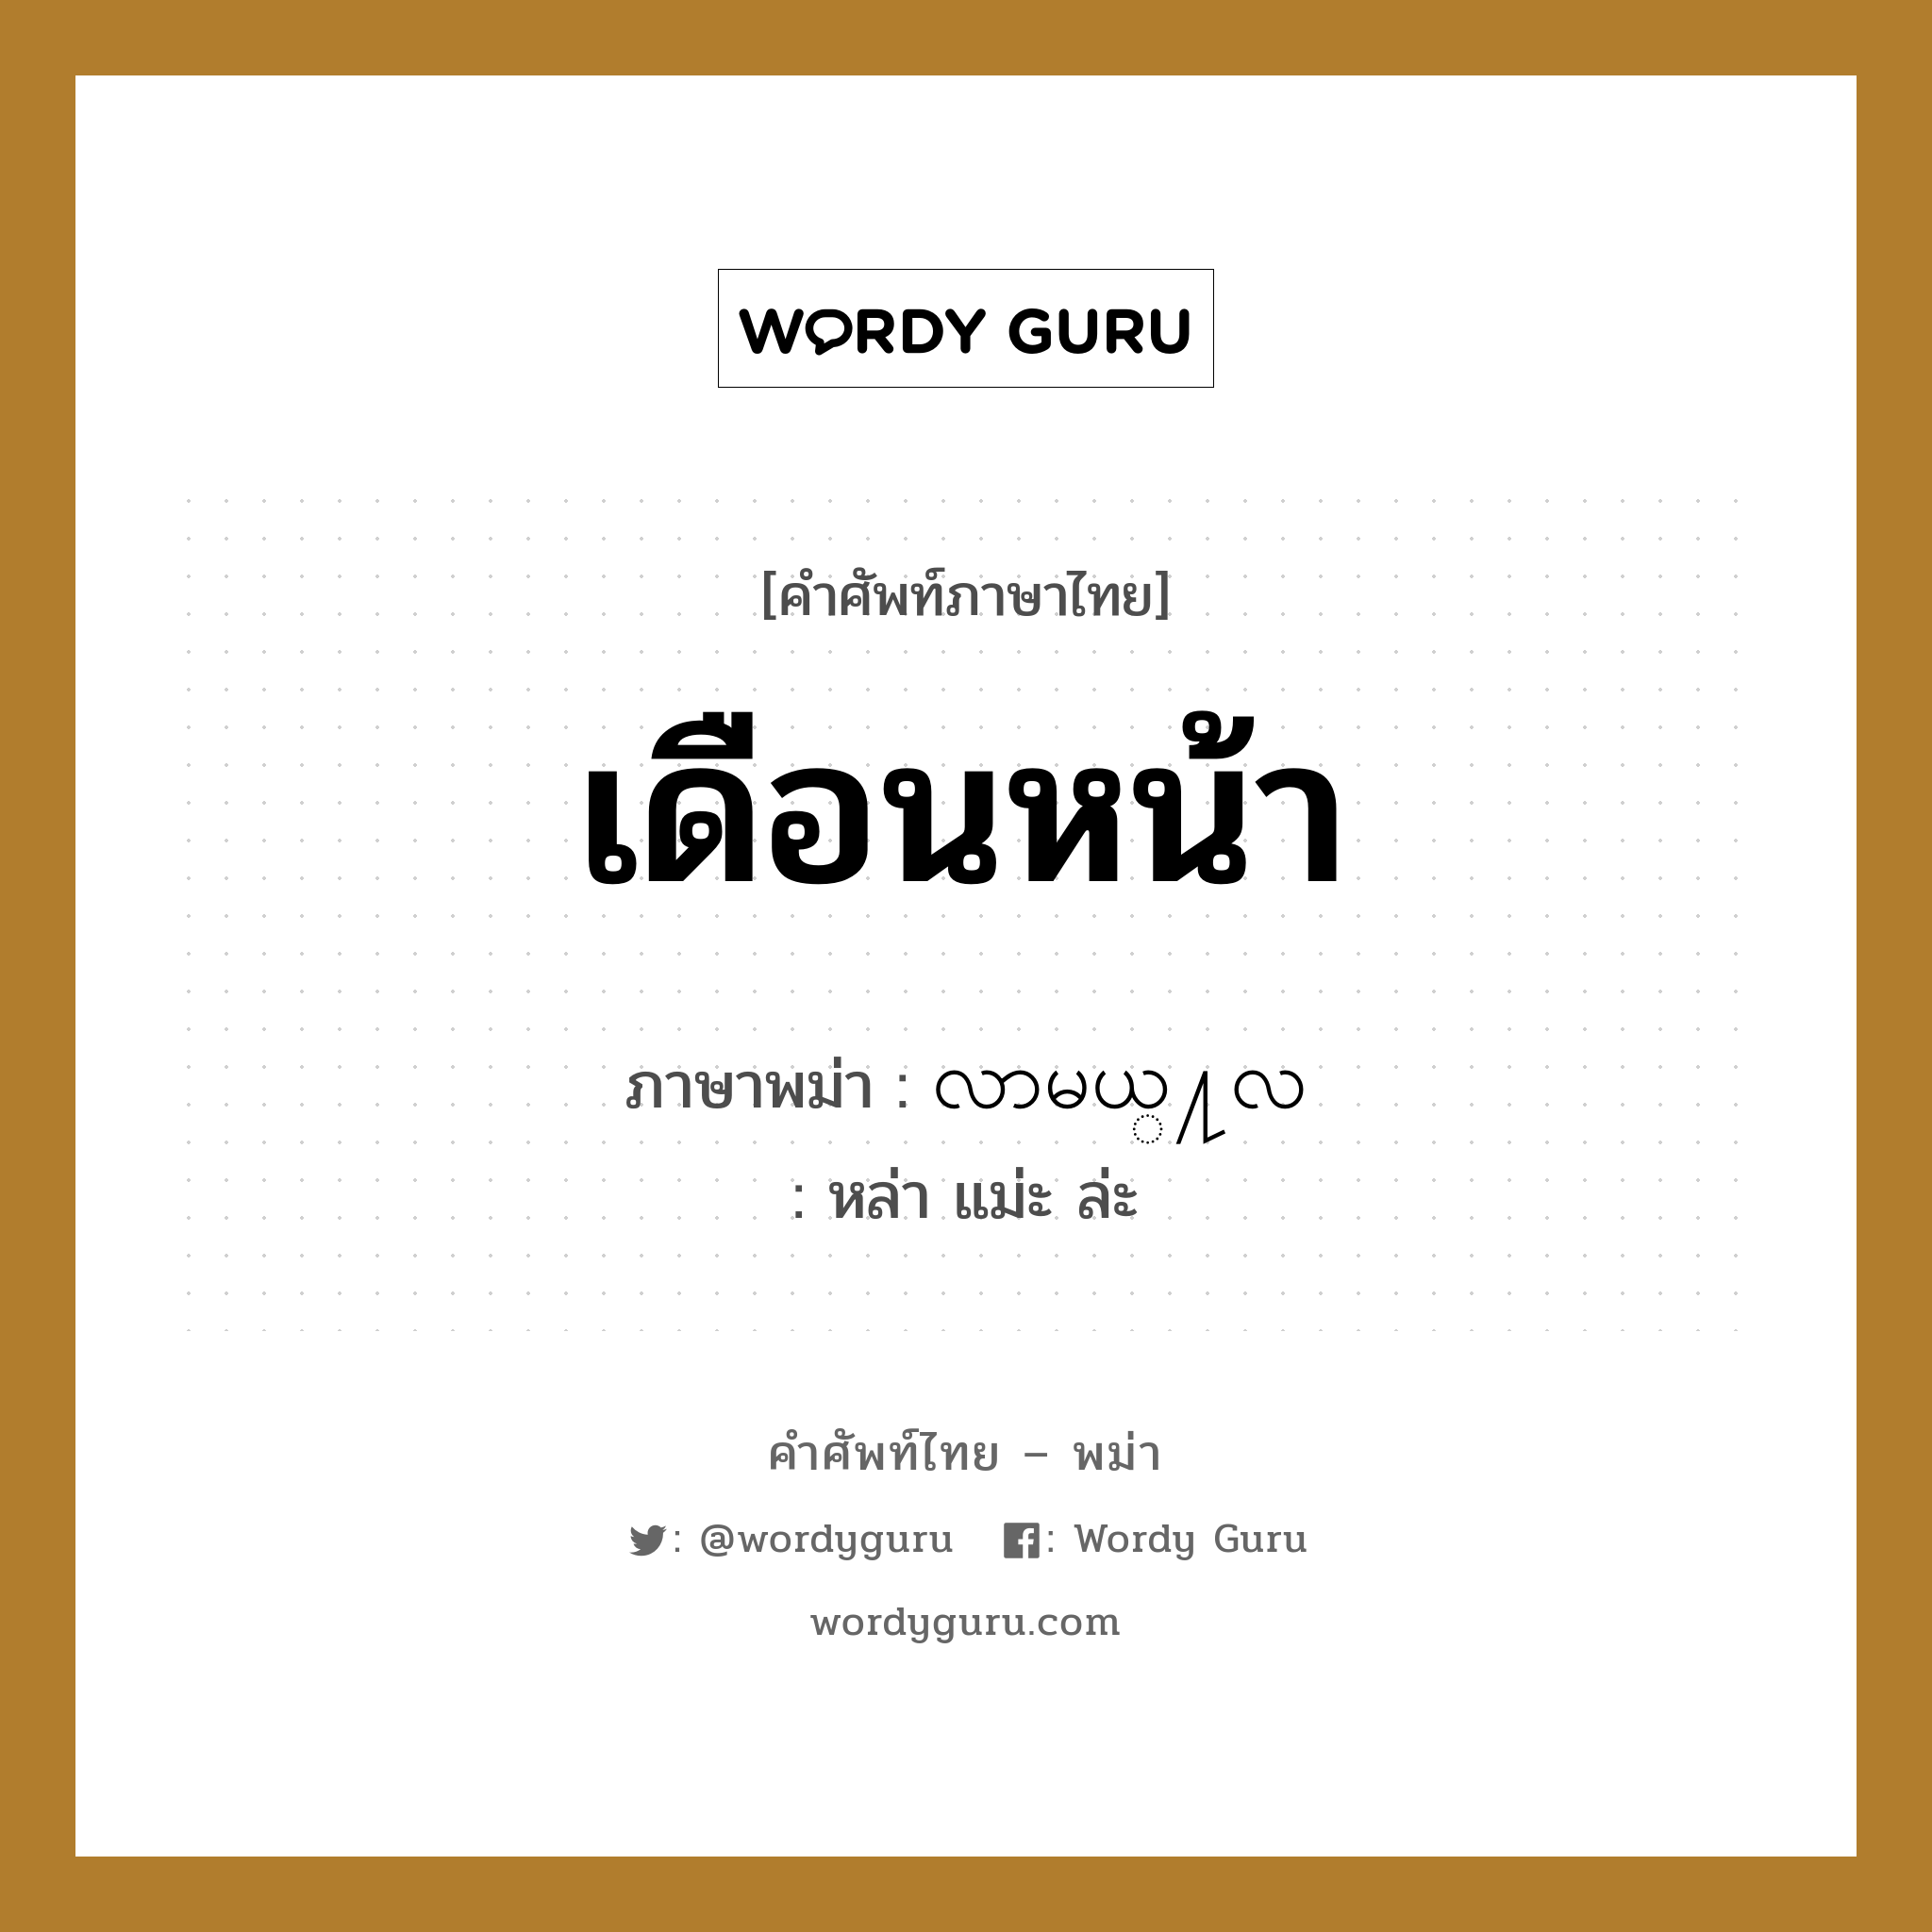 เดือนหน้า ภาษาพม่าคืออะไร, คำศัพท์ภาษาไทย - พม่า เดือนหน้า ภาษาพม่า လာမယ္႔လ หมวด หมวดวัน เดือน ปี หล่า แม่ะ ล่ะ หมวด หมวดวัน เดือน ปี